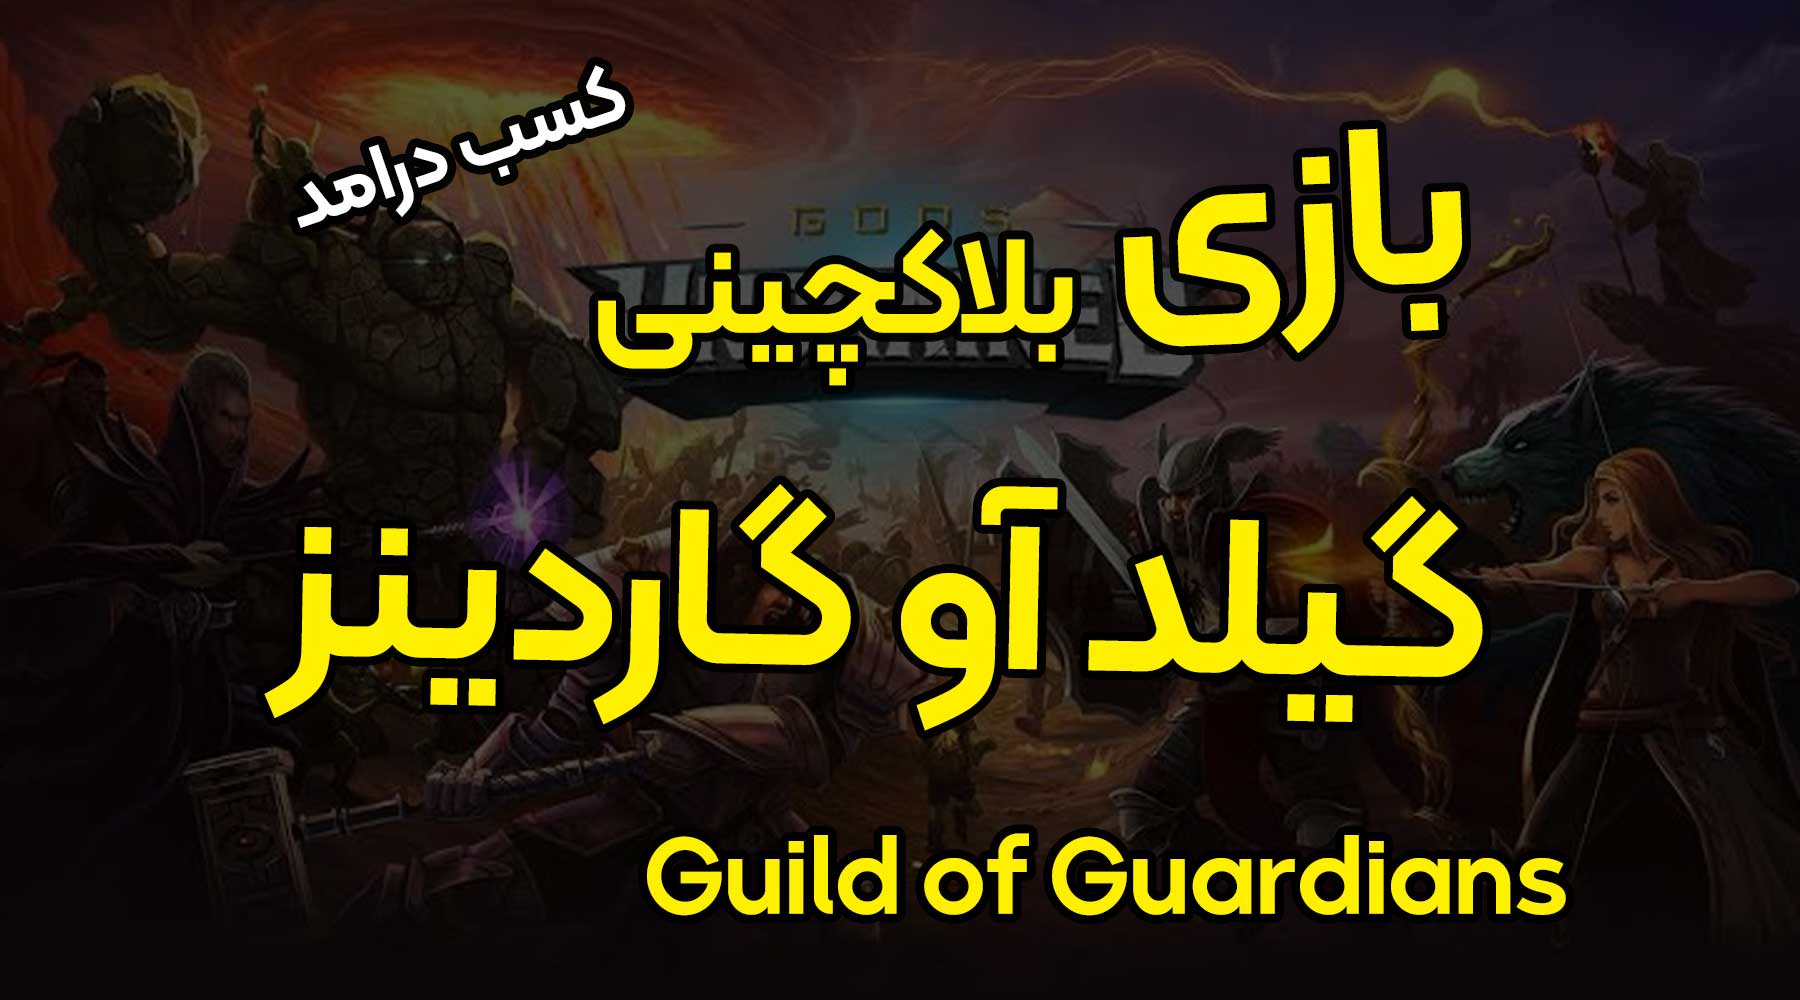 بازی بلاکچینی گیلد آو گاردینز (Guild of Guardians) +آموزش کسب درامد از آن